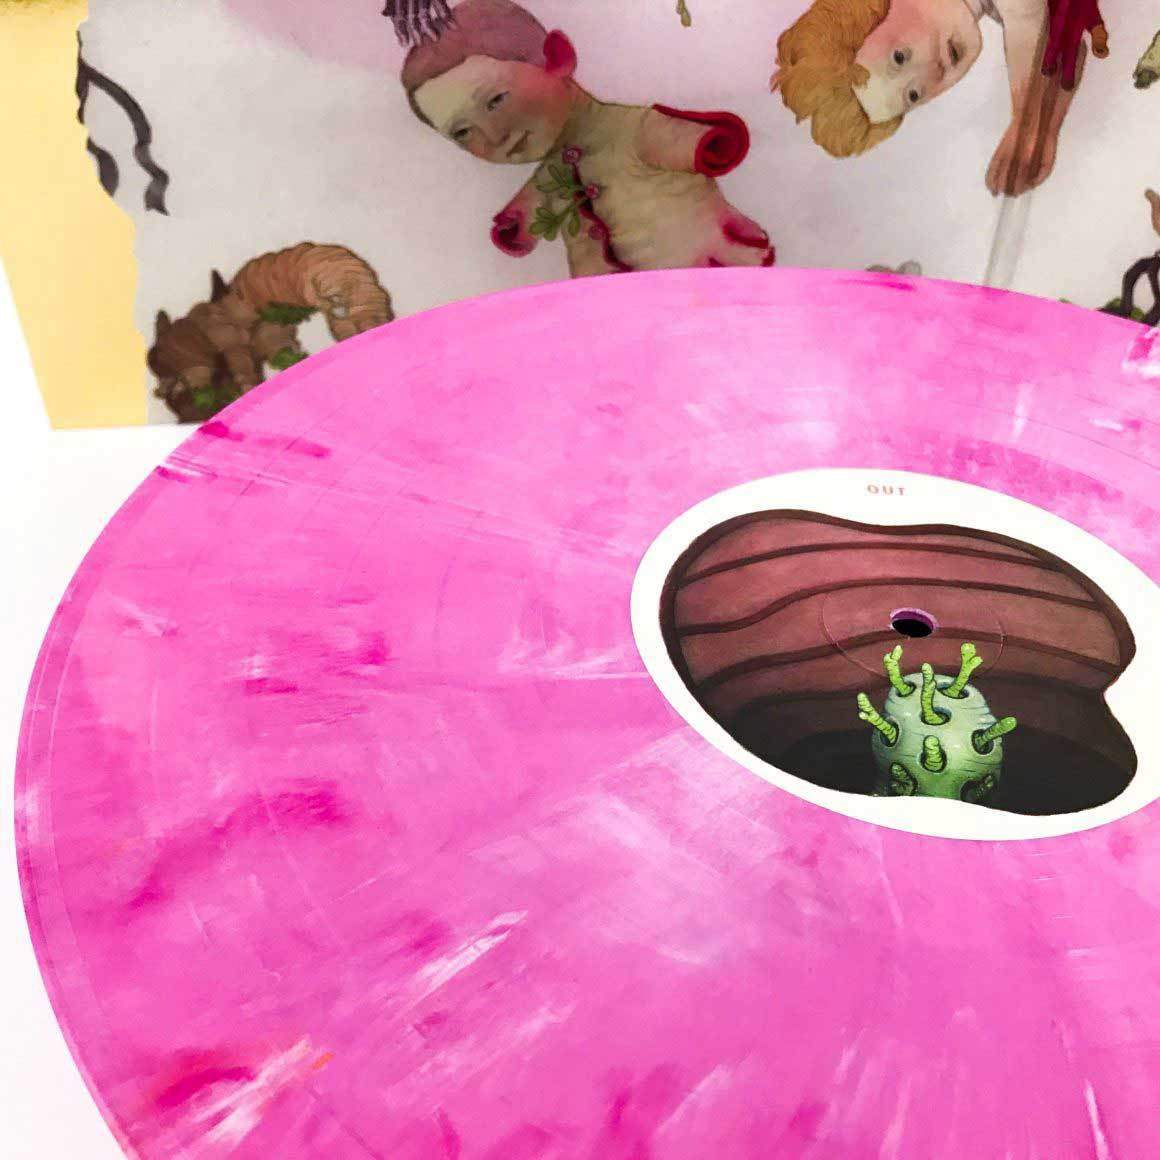 Vol. 021: Pink Portals - VINYL MOON